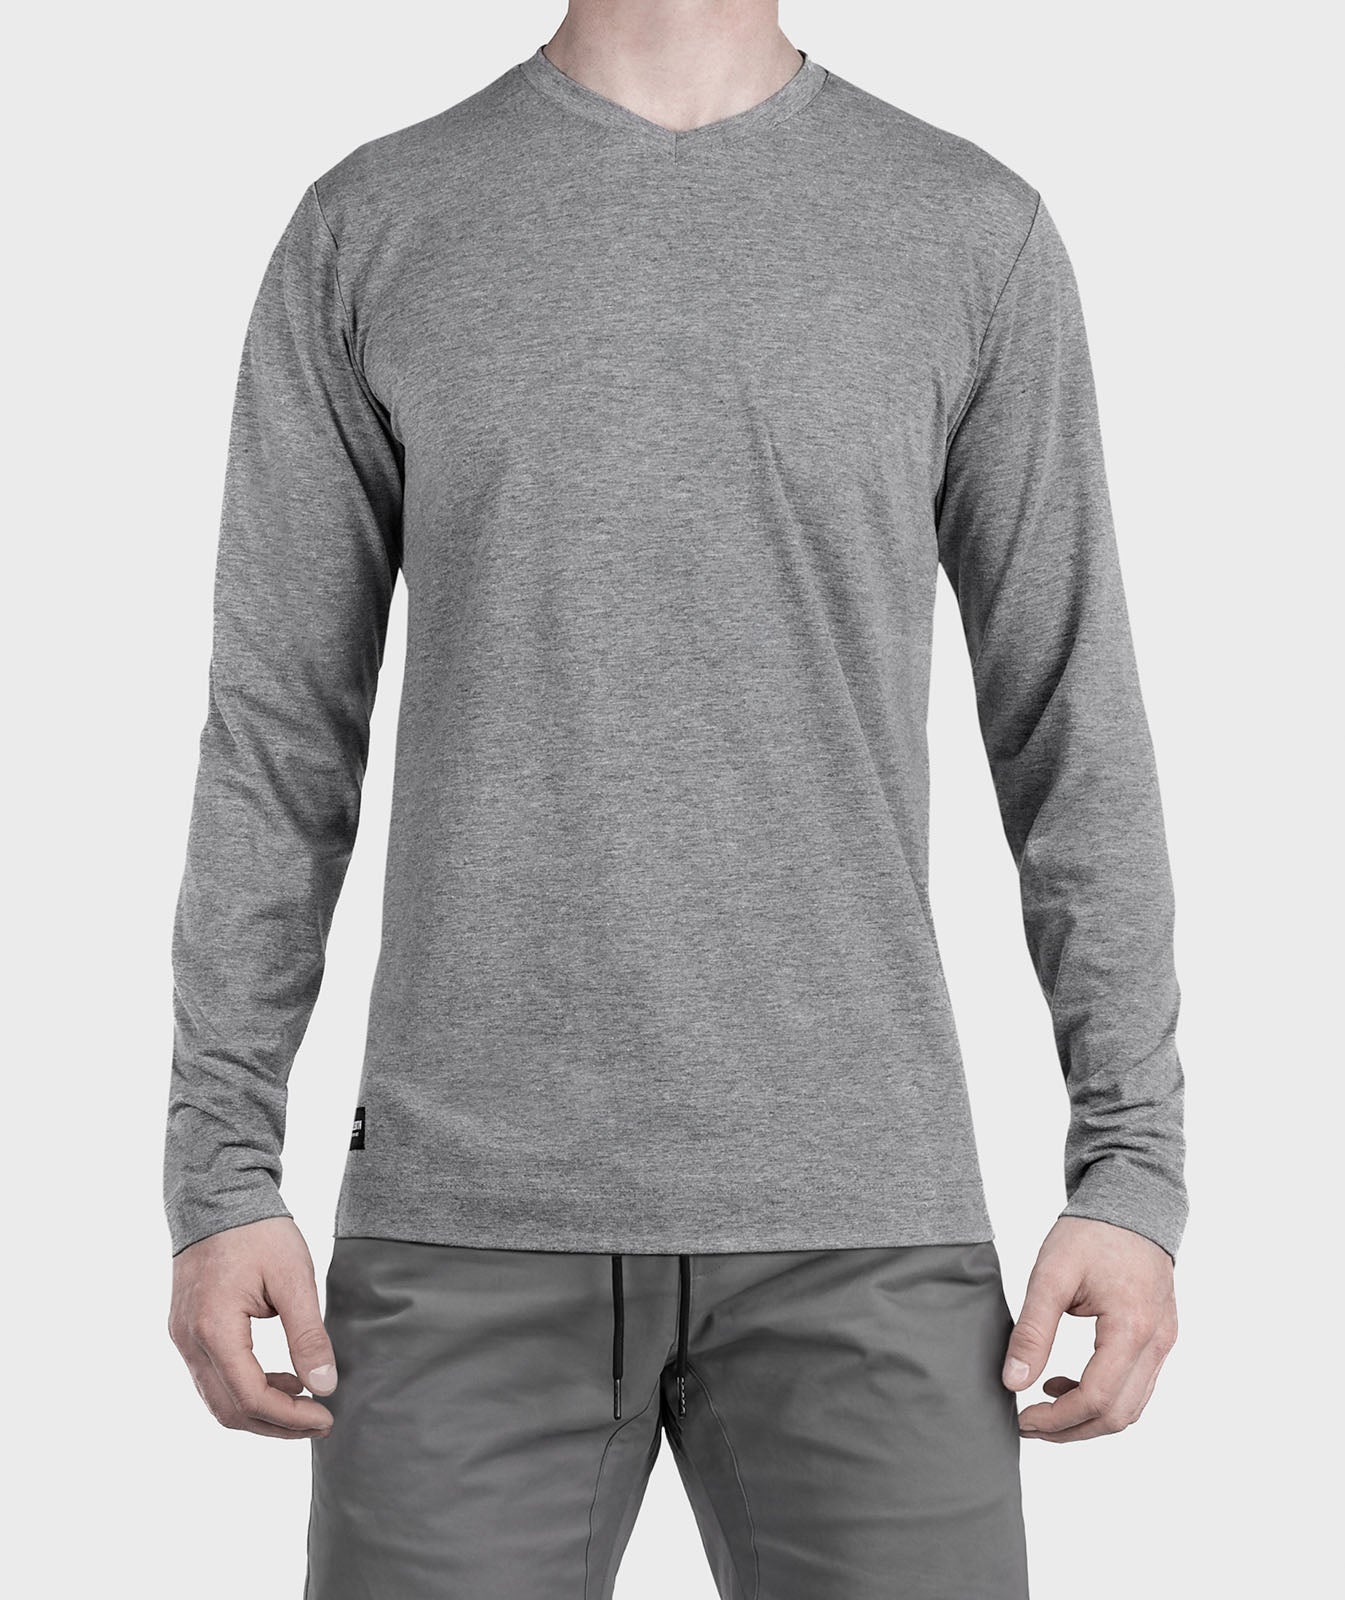 Kollektiv Men's København Long Sleeve Shirt - MyTravelShop.ca